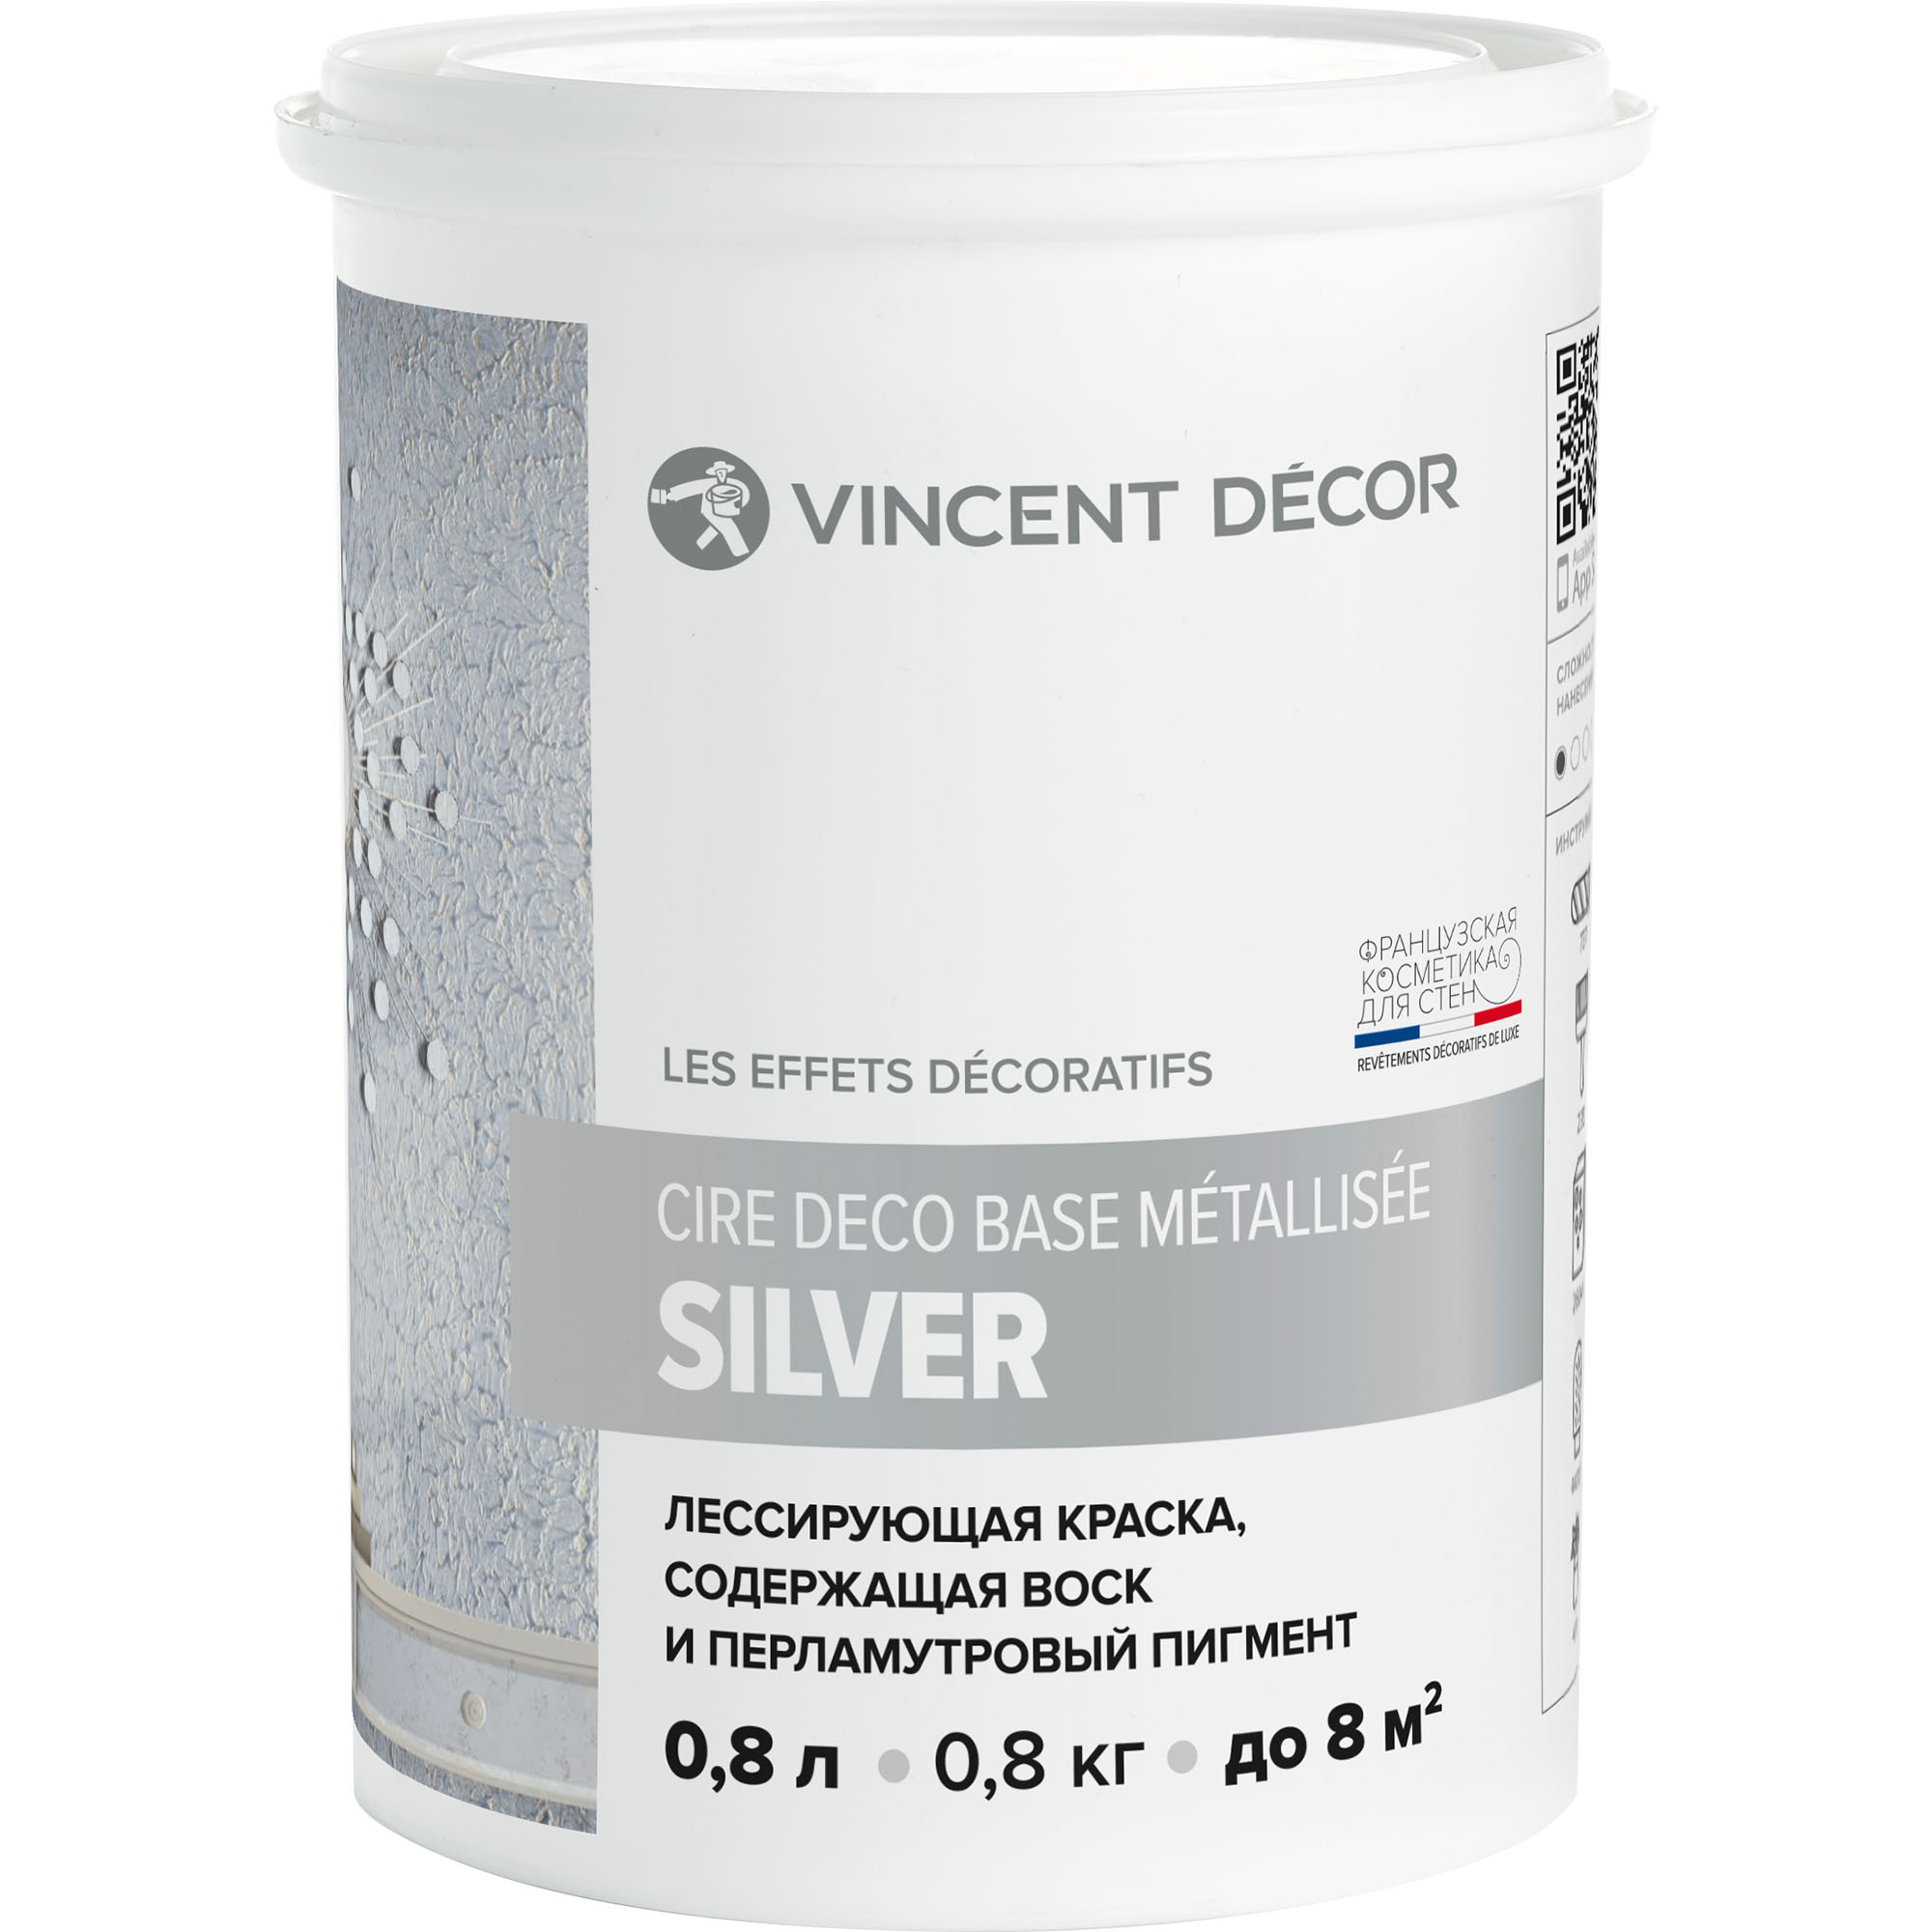 Краска лессирующая для декоративных покрытий Vincent Decor Cire deco base Metallisee Silver серебро 0,8 л грунтовка для декоративных покрытий vincent decor sous couche 1 л